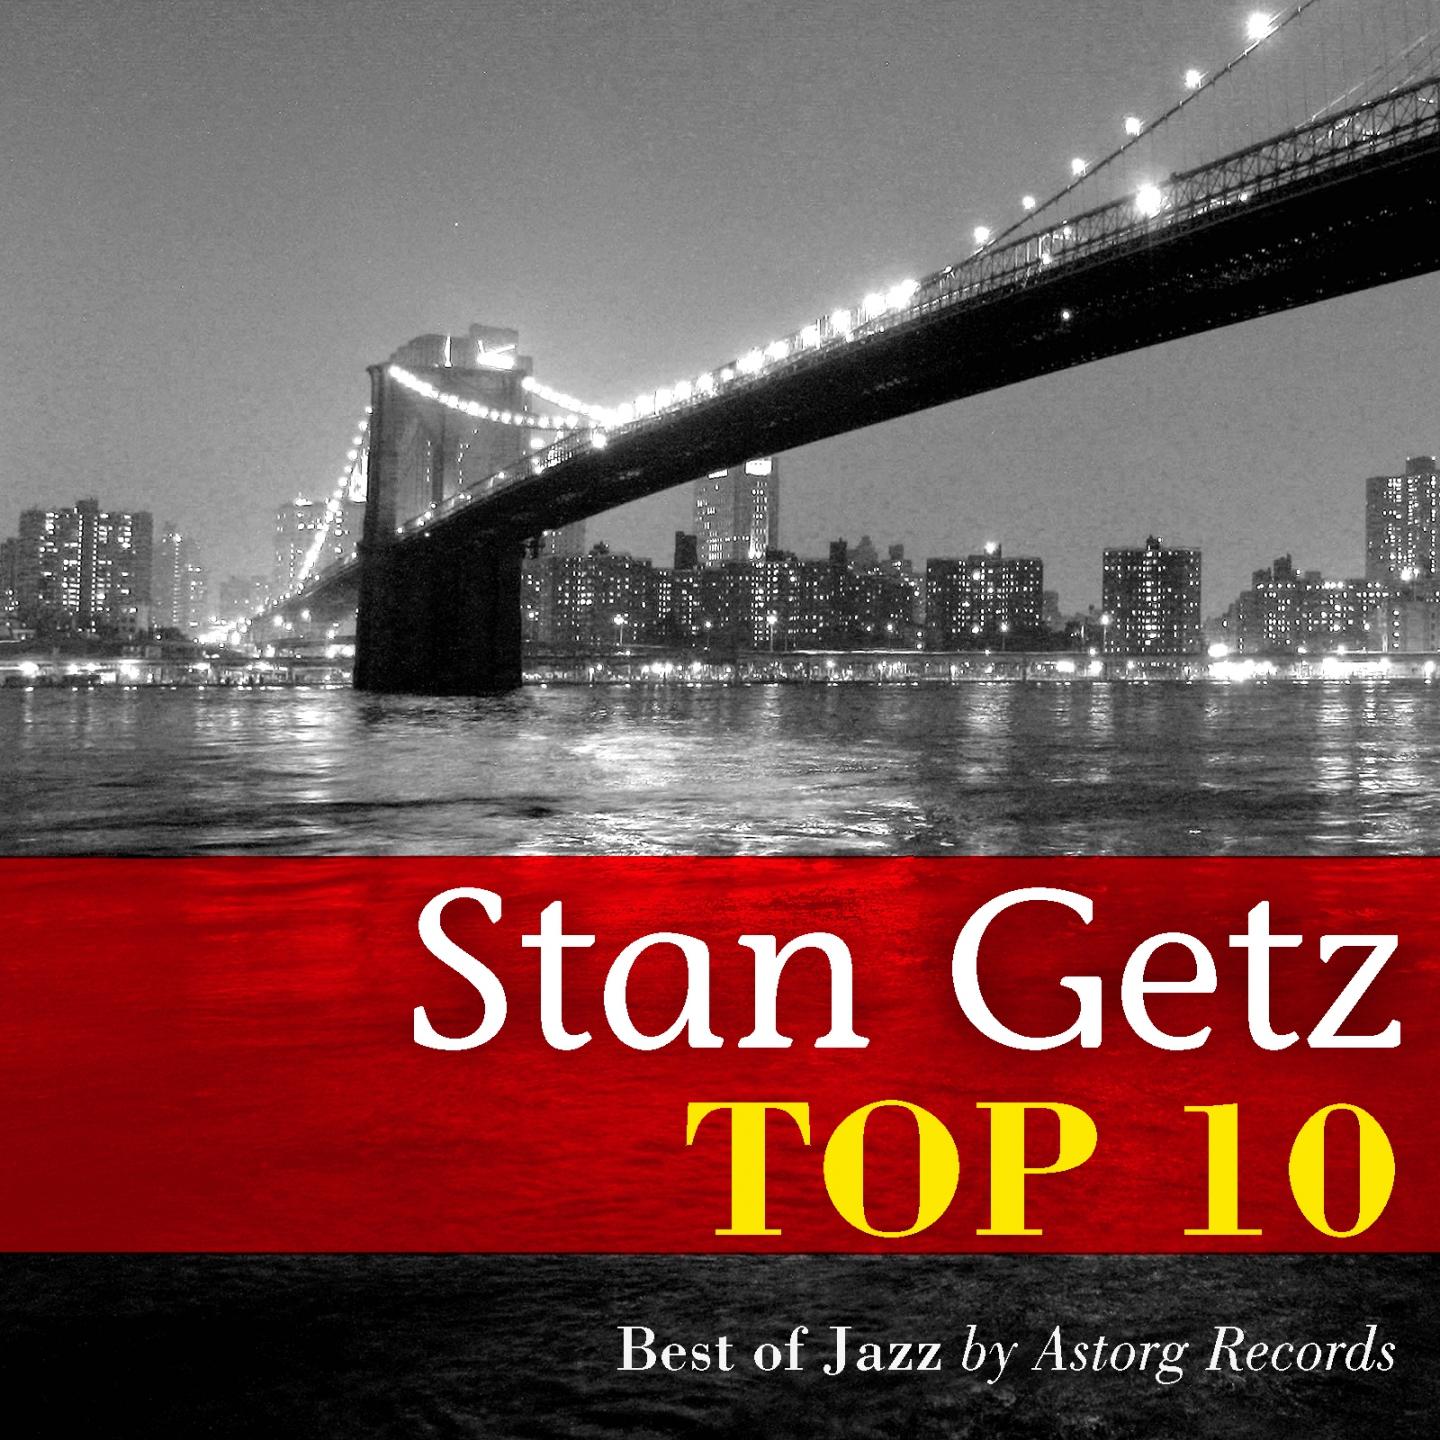 Stan Getz Relaxing Top 10